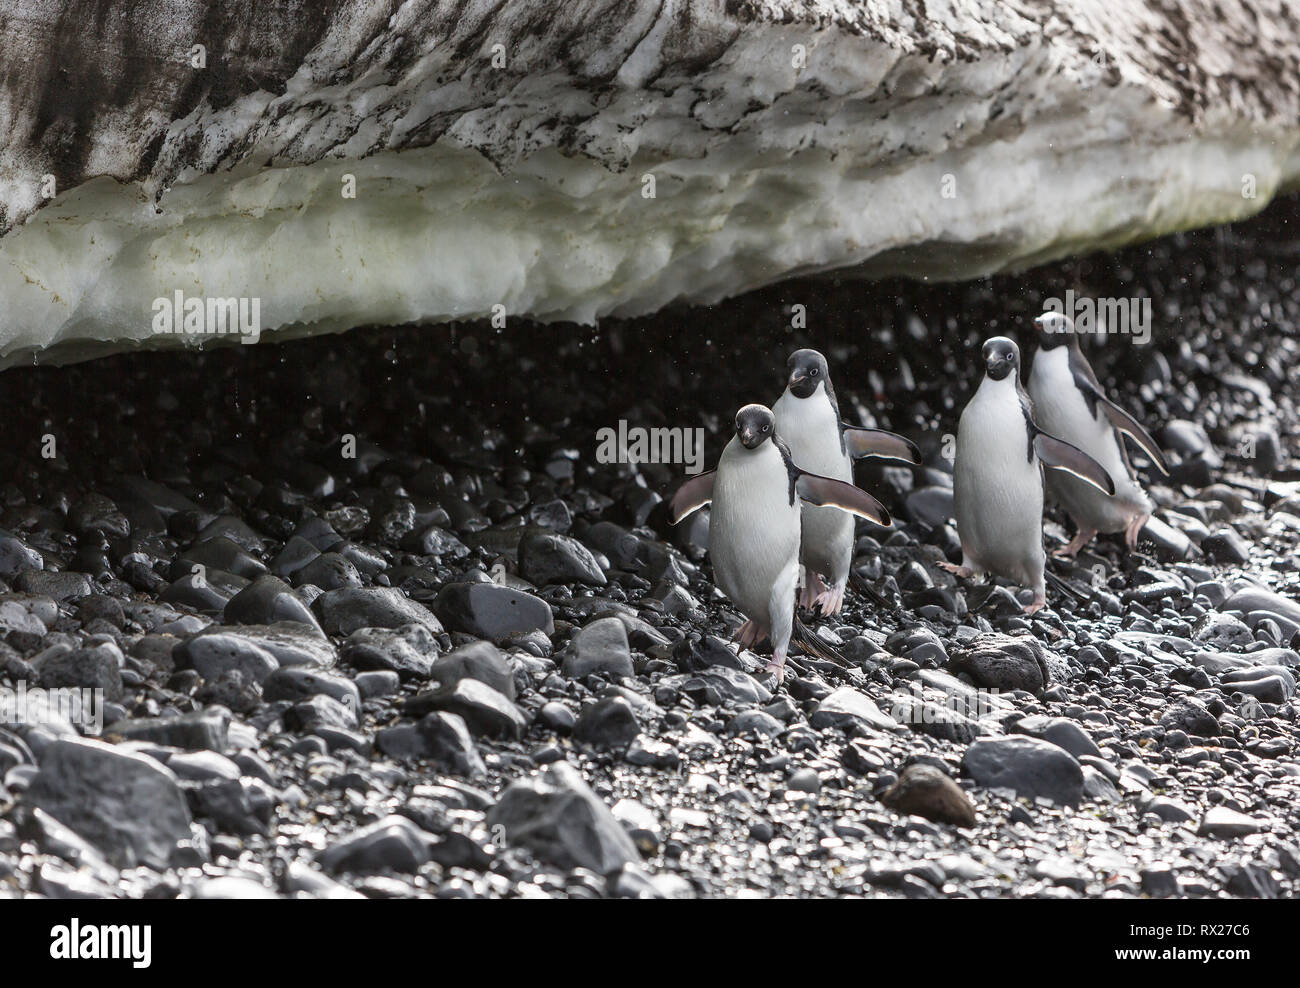 Los pingüinos Adelia (Pygoscelis adeliae) De marzo a lo largo de una playa sembrada de guijarros bajo un campo de nieve en Brown Bluff, en el continente antártico, la Antártida Foto de stock